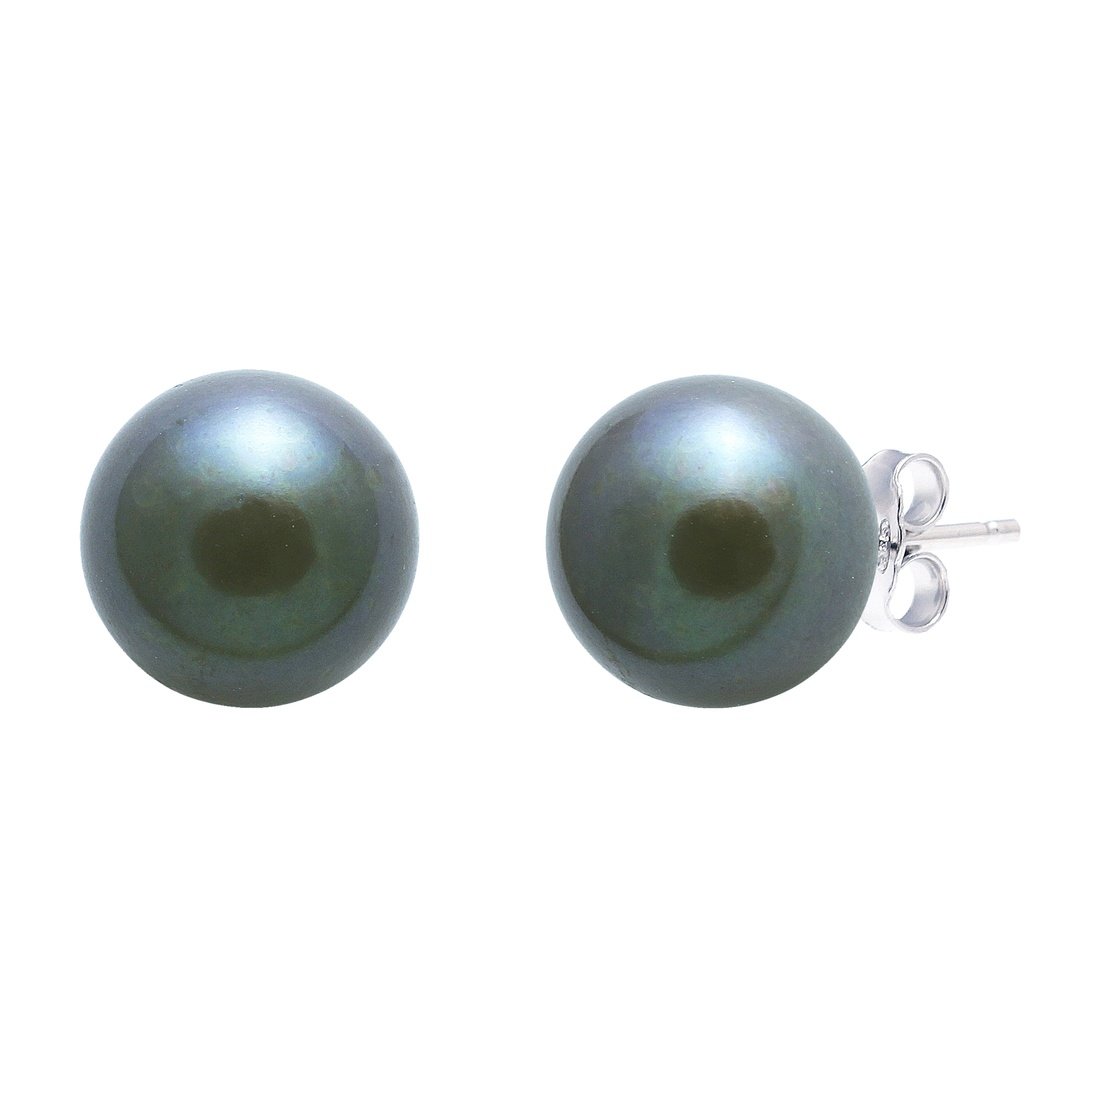 Black freshwater pearl stud earrings 10-10.5mm